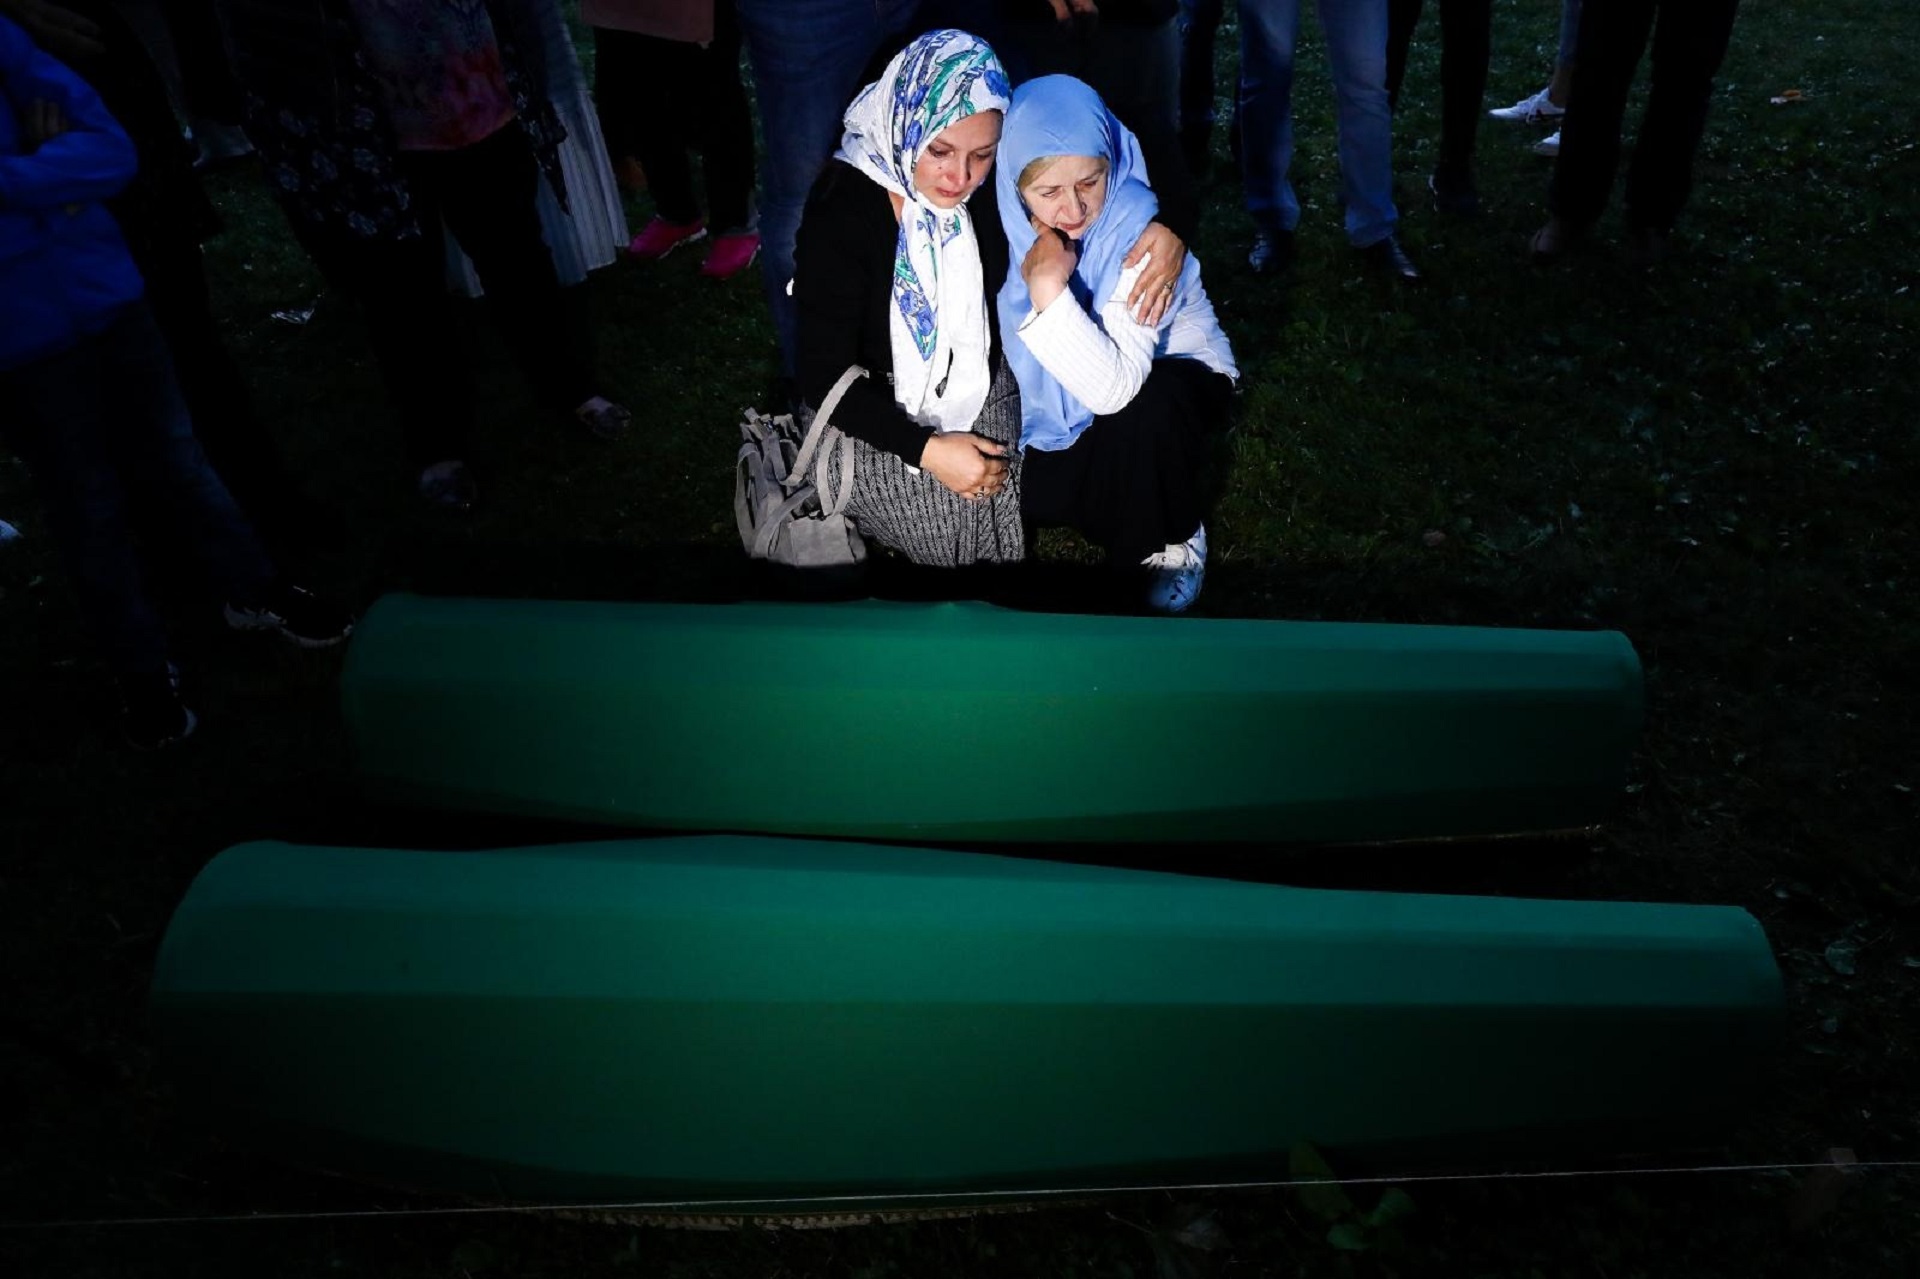 10.07.2019., Potocari, Bosna i Hercegovina - Tabuti s ostatcima 33 zrtve genocida izneseni iz tvornice akumulatora u musalu, gdje ce sutra biti pokopani. Photo: Armin Durgut/PIXSELL